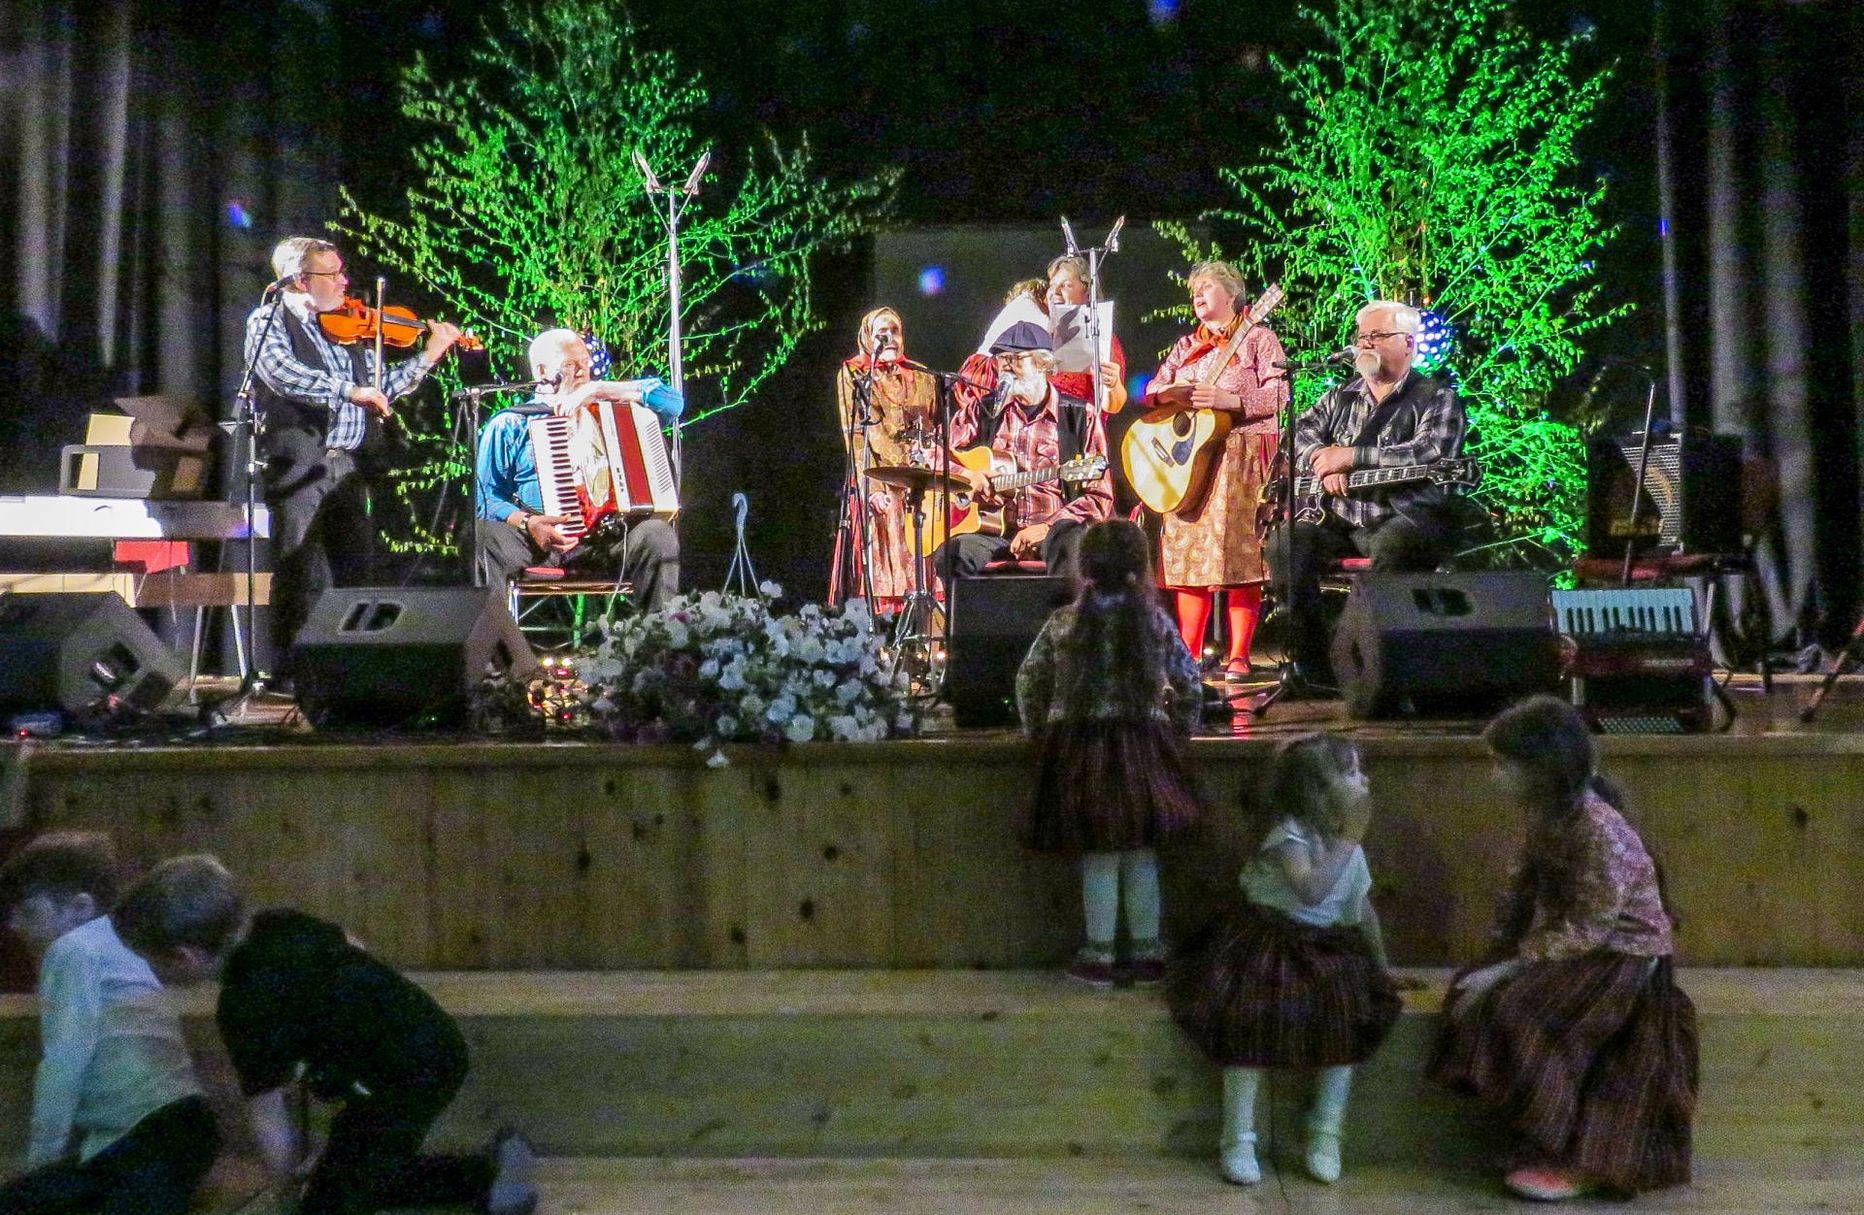 Kukerpillidega koos esitas Kihnu Virve pereansambel rahvalikuks kujunenud laulu “Mere pidu”.